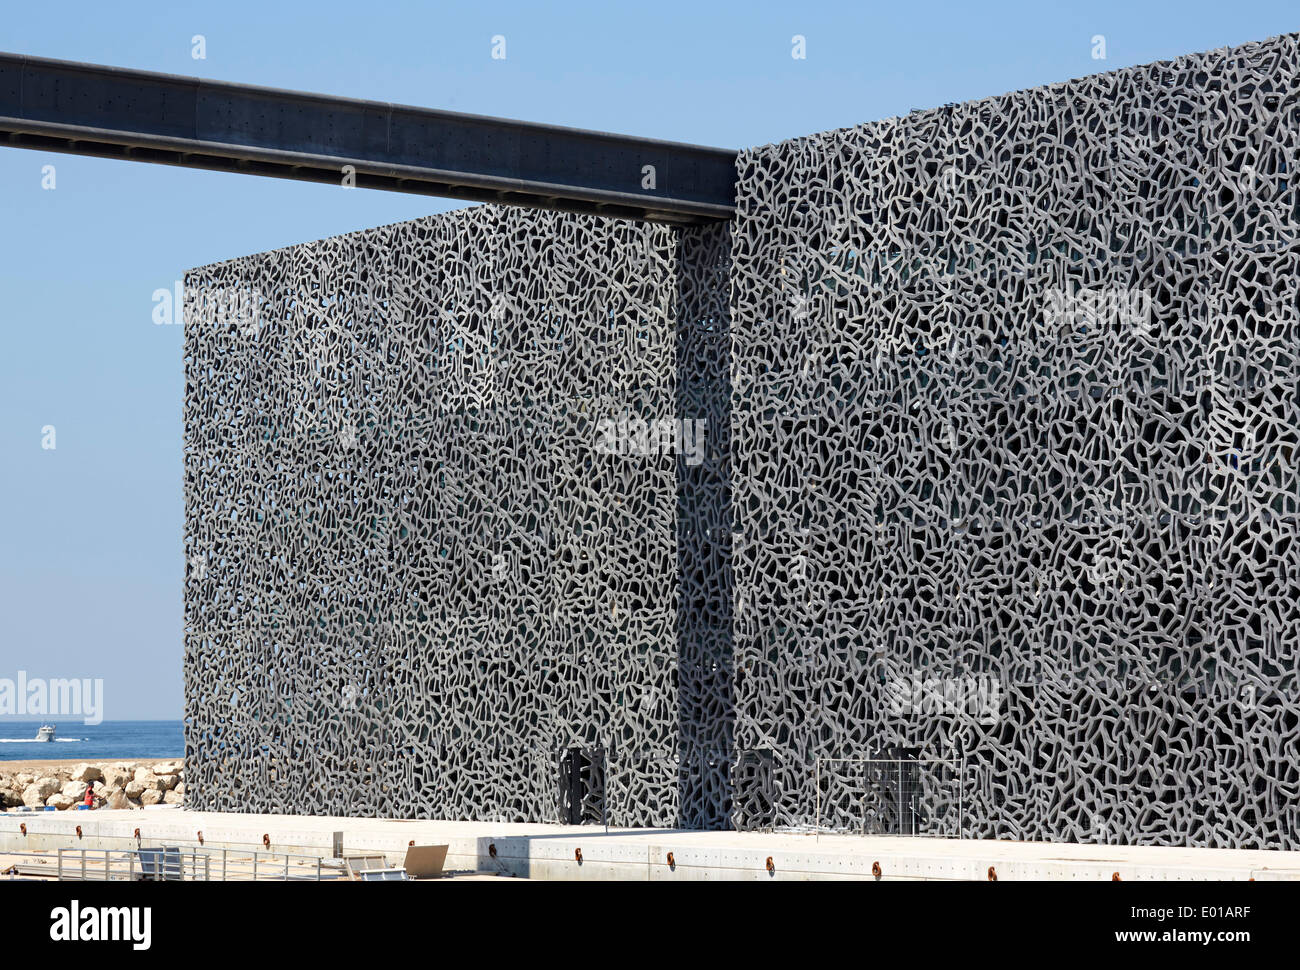 MuCEM (Museum der europäischen Zivilisation und das Mittelmeer), Marseille, Frankreich. Architekt: Rudy Ricciotti, 2013. Ornamentale co Stockfoto